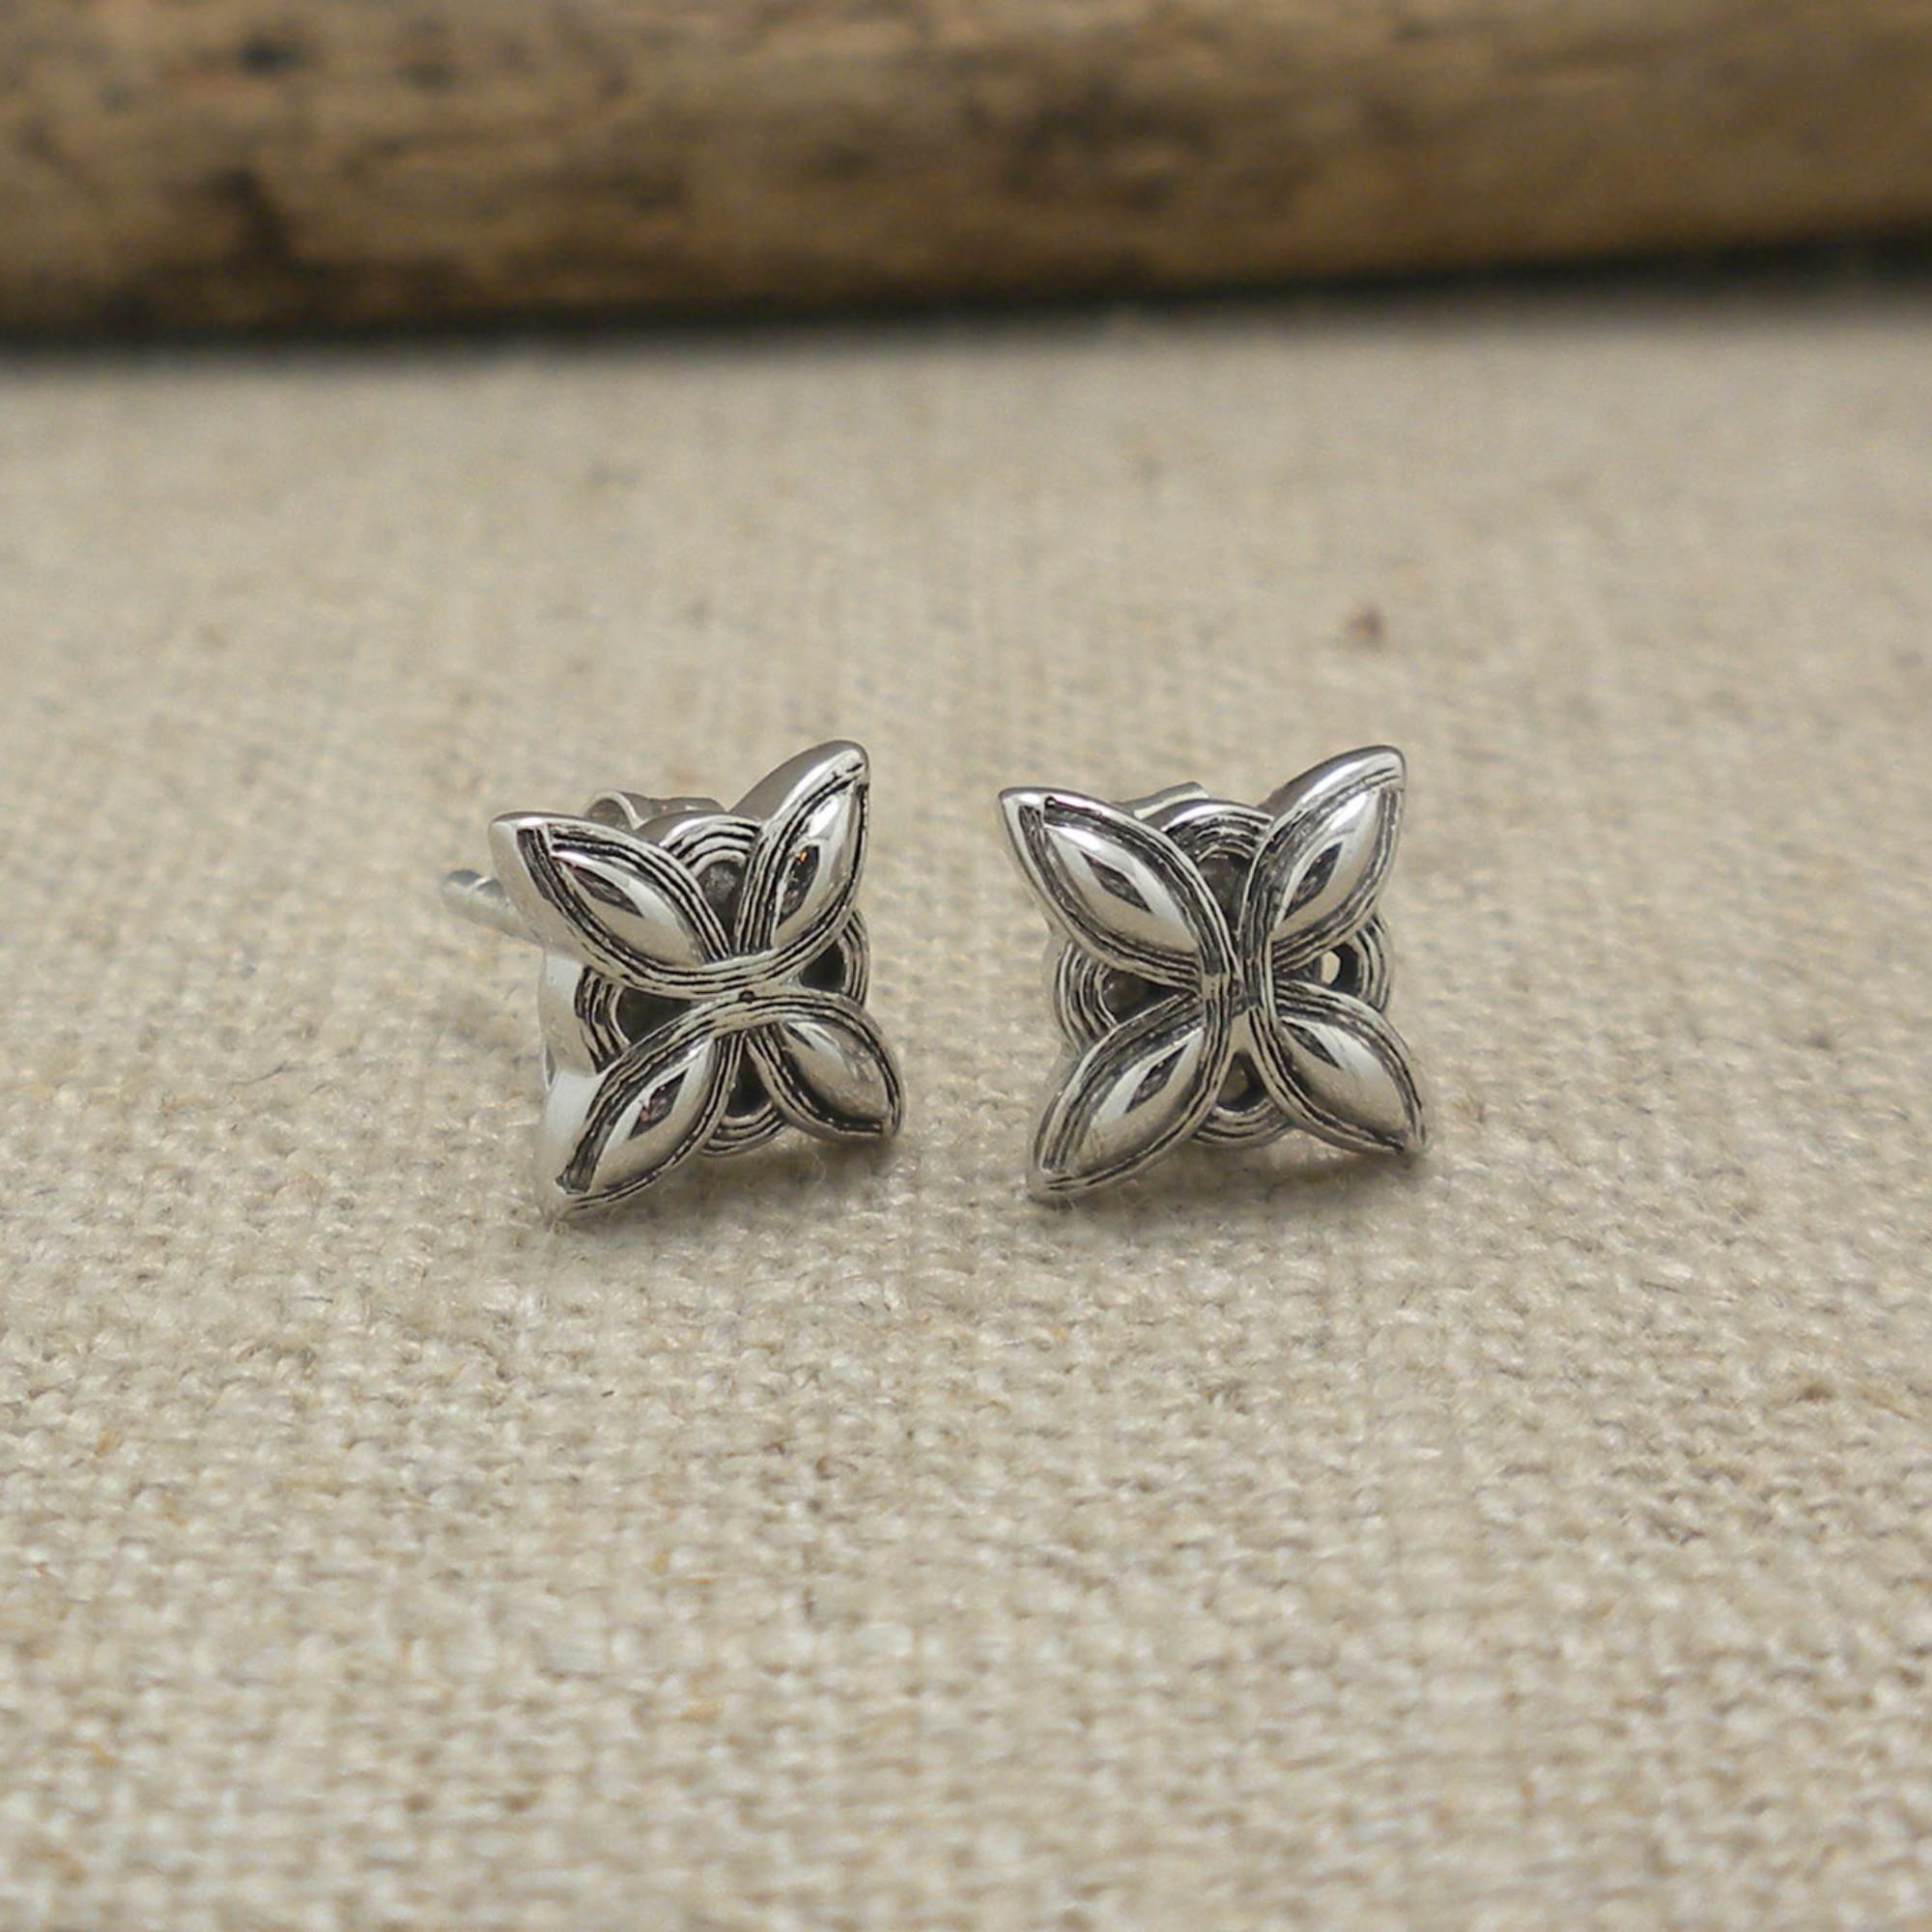 01-PES085-Star-earrings.jpg